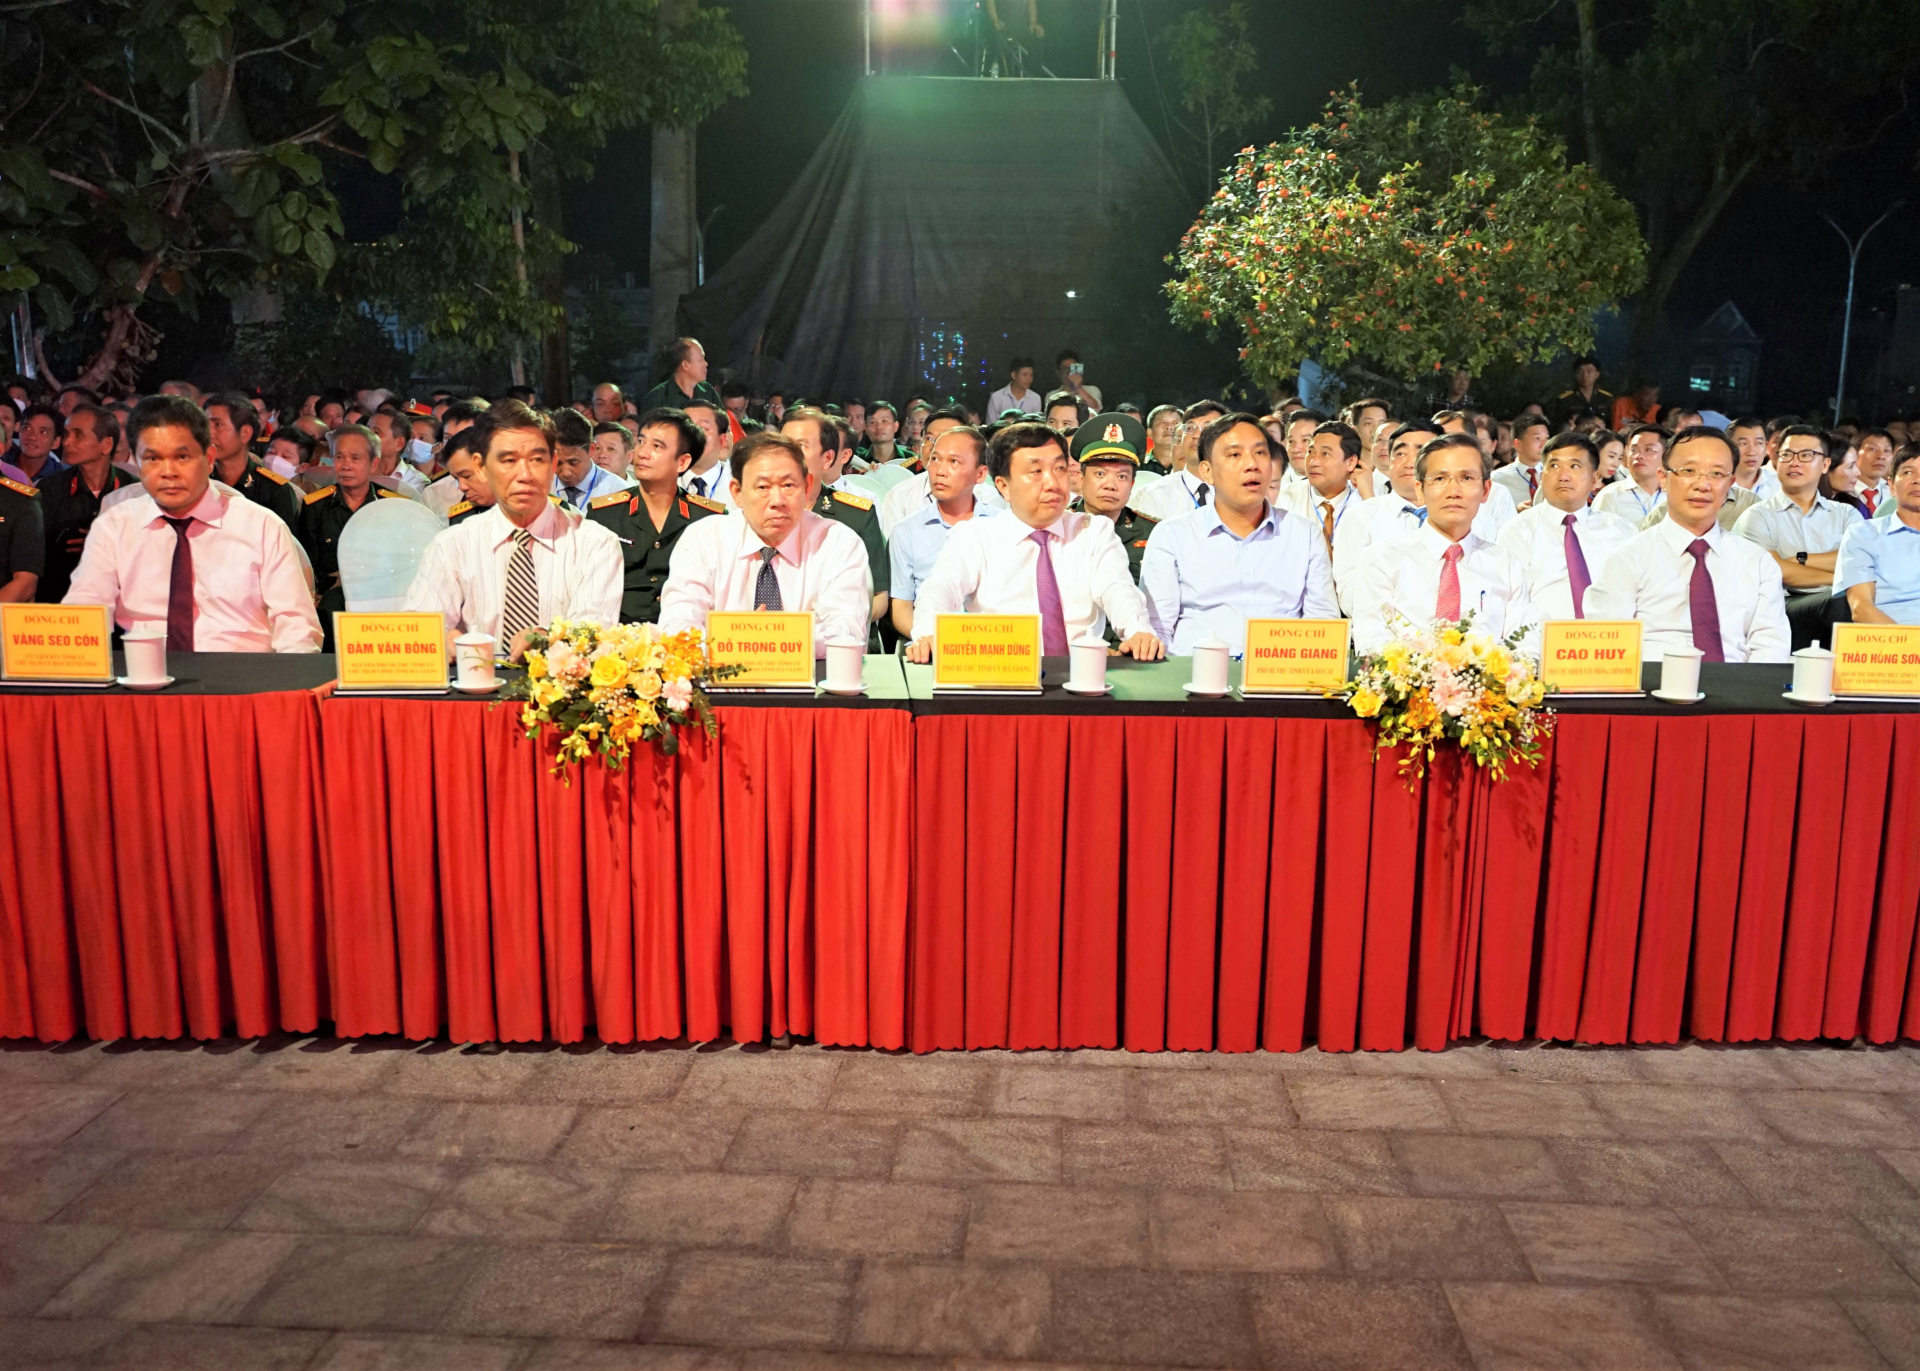 Các đồng chí lãnh đạo tỉnh cùng đại biểu tham dự Chương trình cầu truyền hình “Khúc tráng ca hòa bình” tại điểm cầu Nghĩa trang Liệt sỹ Quốc gia Vị Xuyên.